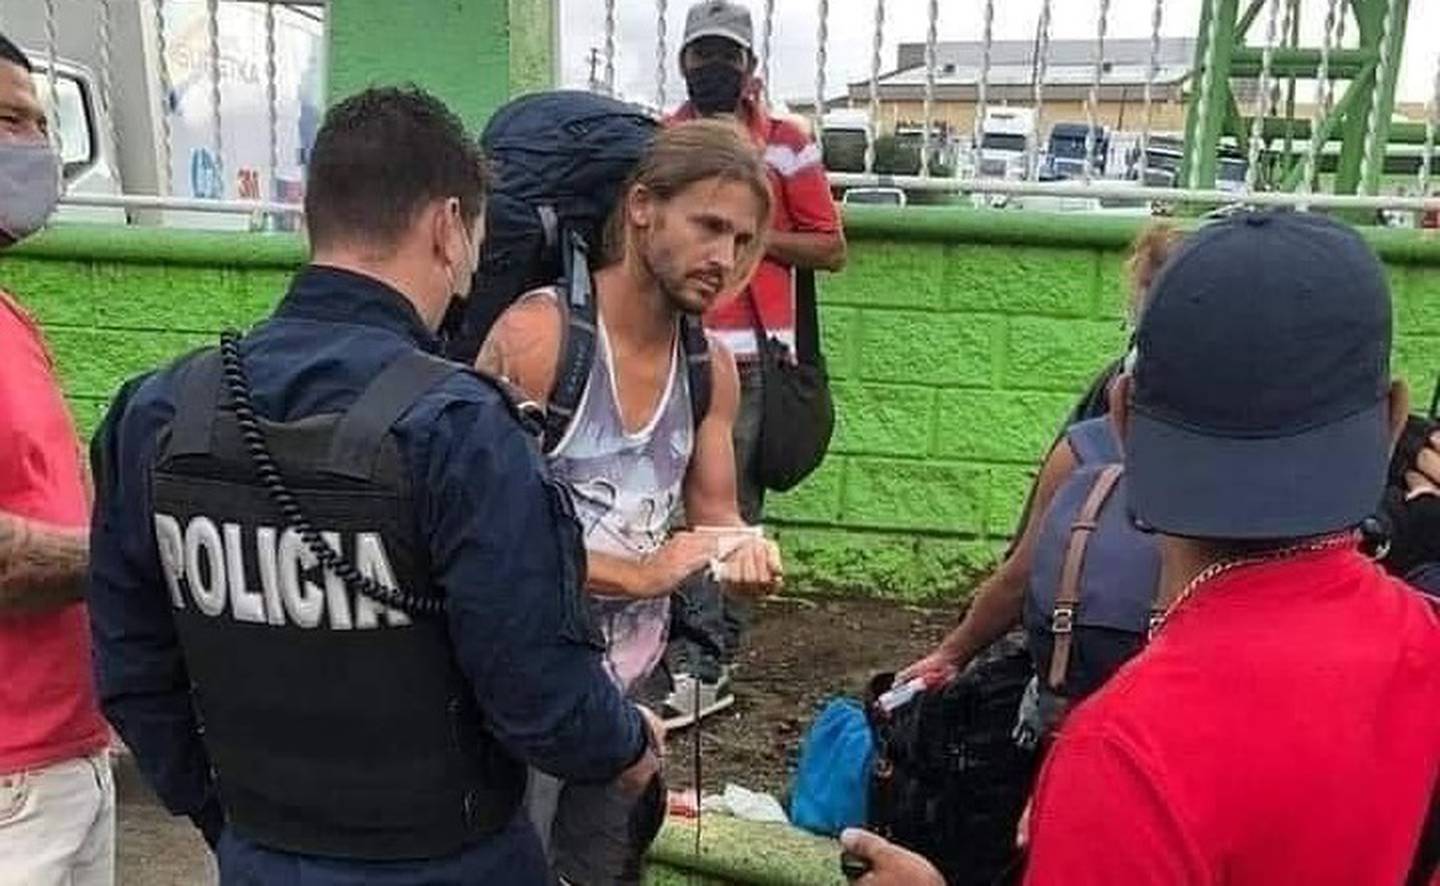 Turista alemán, que en apariencia sería un policía entrenado, se defiende de asaltante en San José. Foto cortesía.